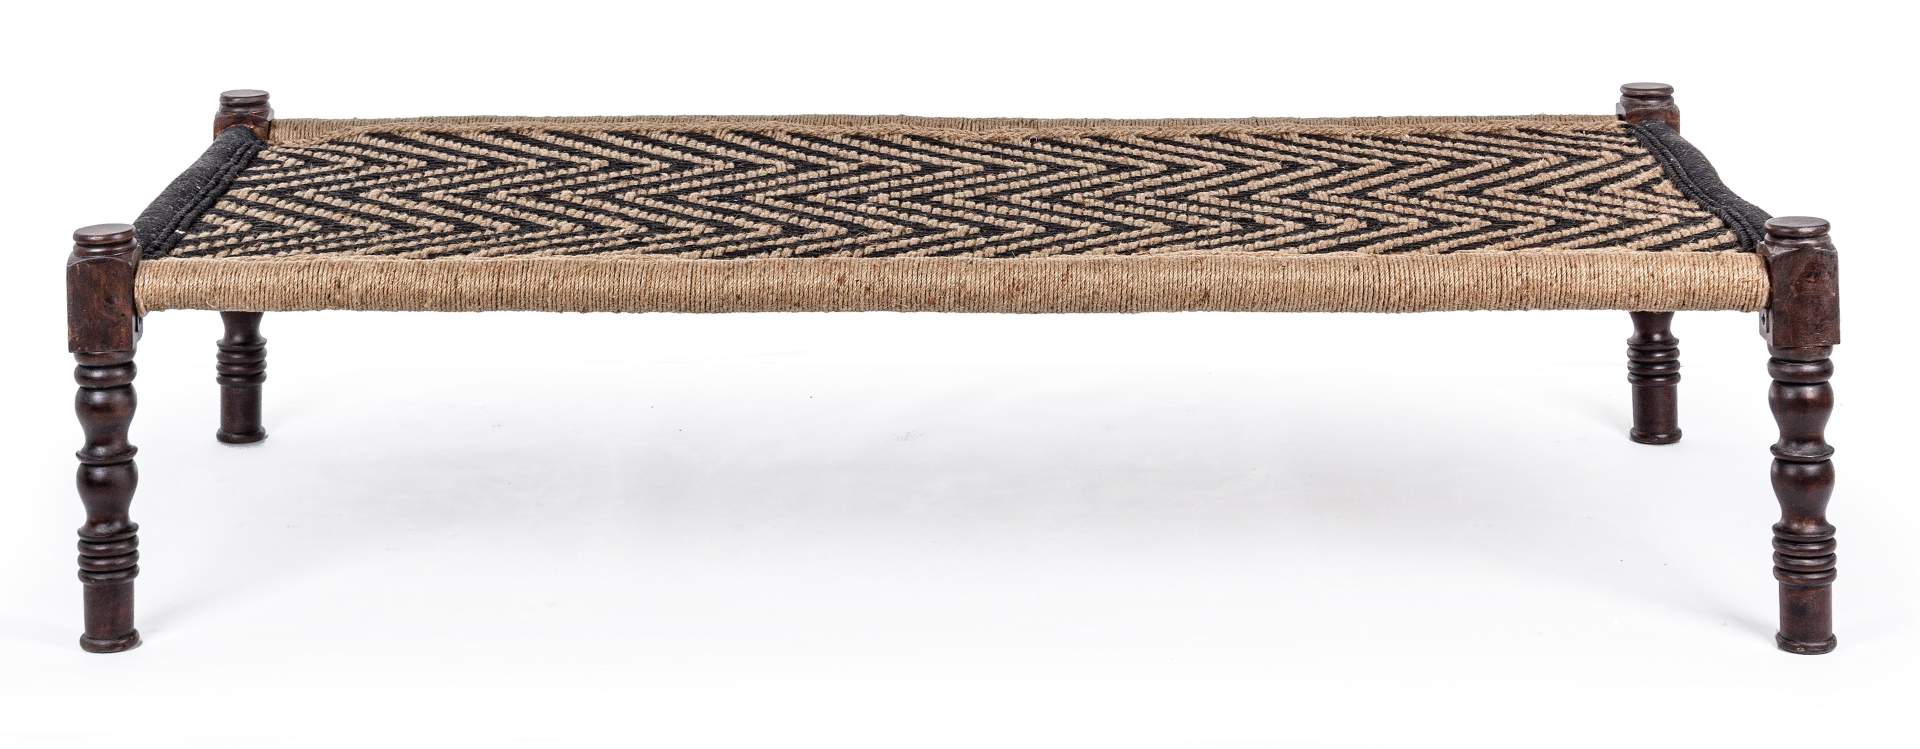 Die Bank Khat überzeugt mit ihrem klassischen aber auch orientalischen Design. Gefertigt wurde die Bank aus Sheesham-Holz, welches einen schwarzen Farbton besitzt. Die Sitzfläche ist aus Baumwoll-Seil gefertigt. Die Breite der Bank beträgt 176 cm.